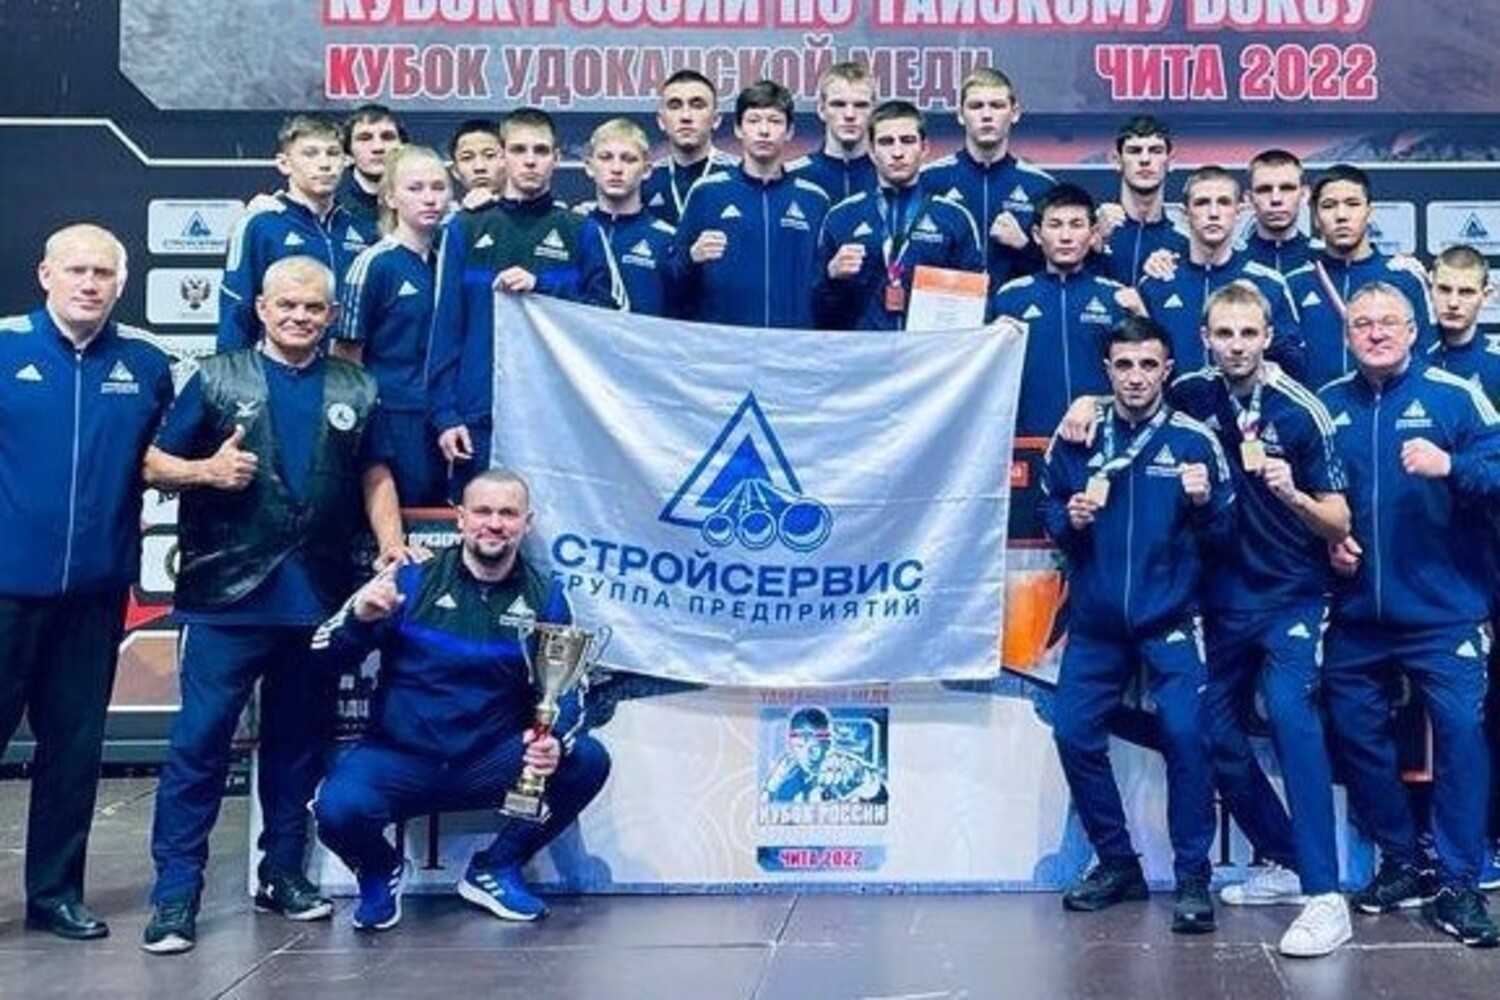 Тайбоксеры из Кузбасса в очередной раз стали чемпионами России при поддержке АО Стройсервис. Стройсервис